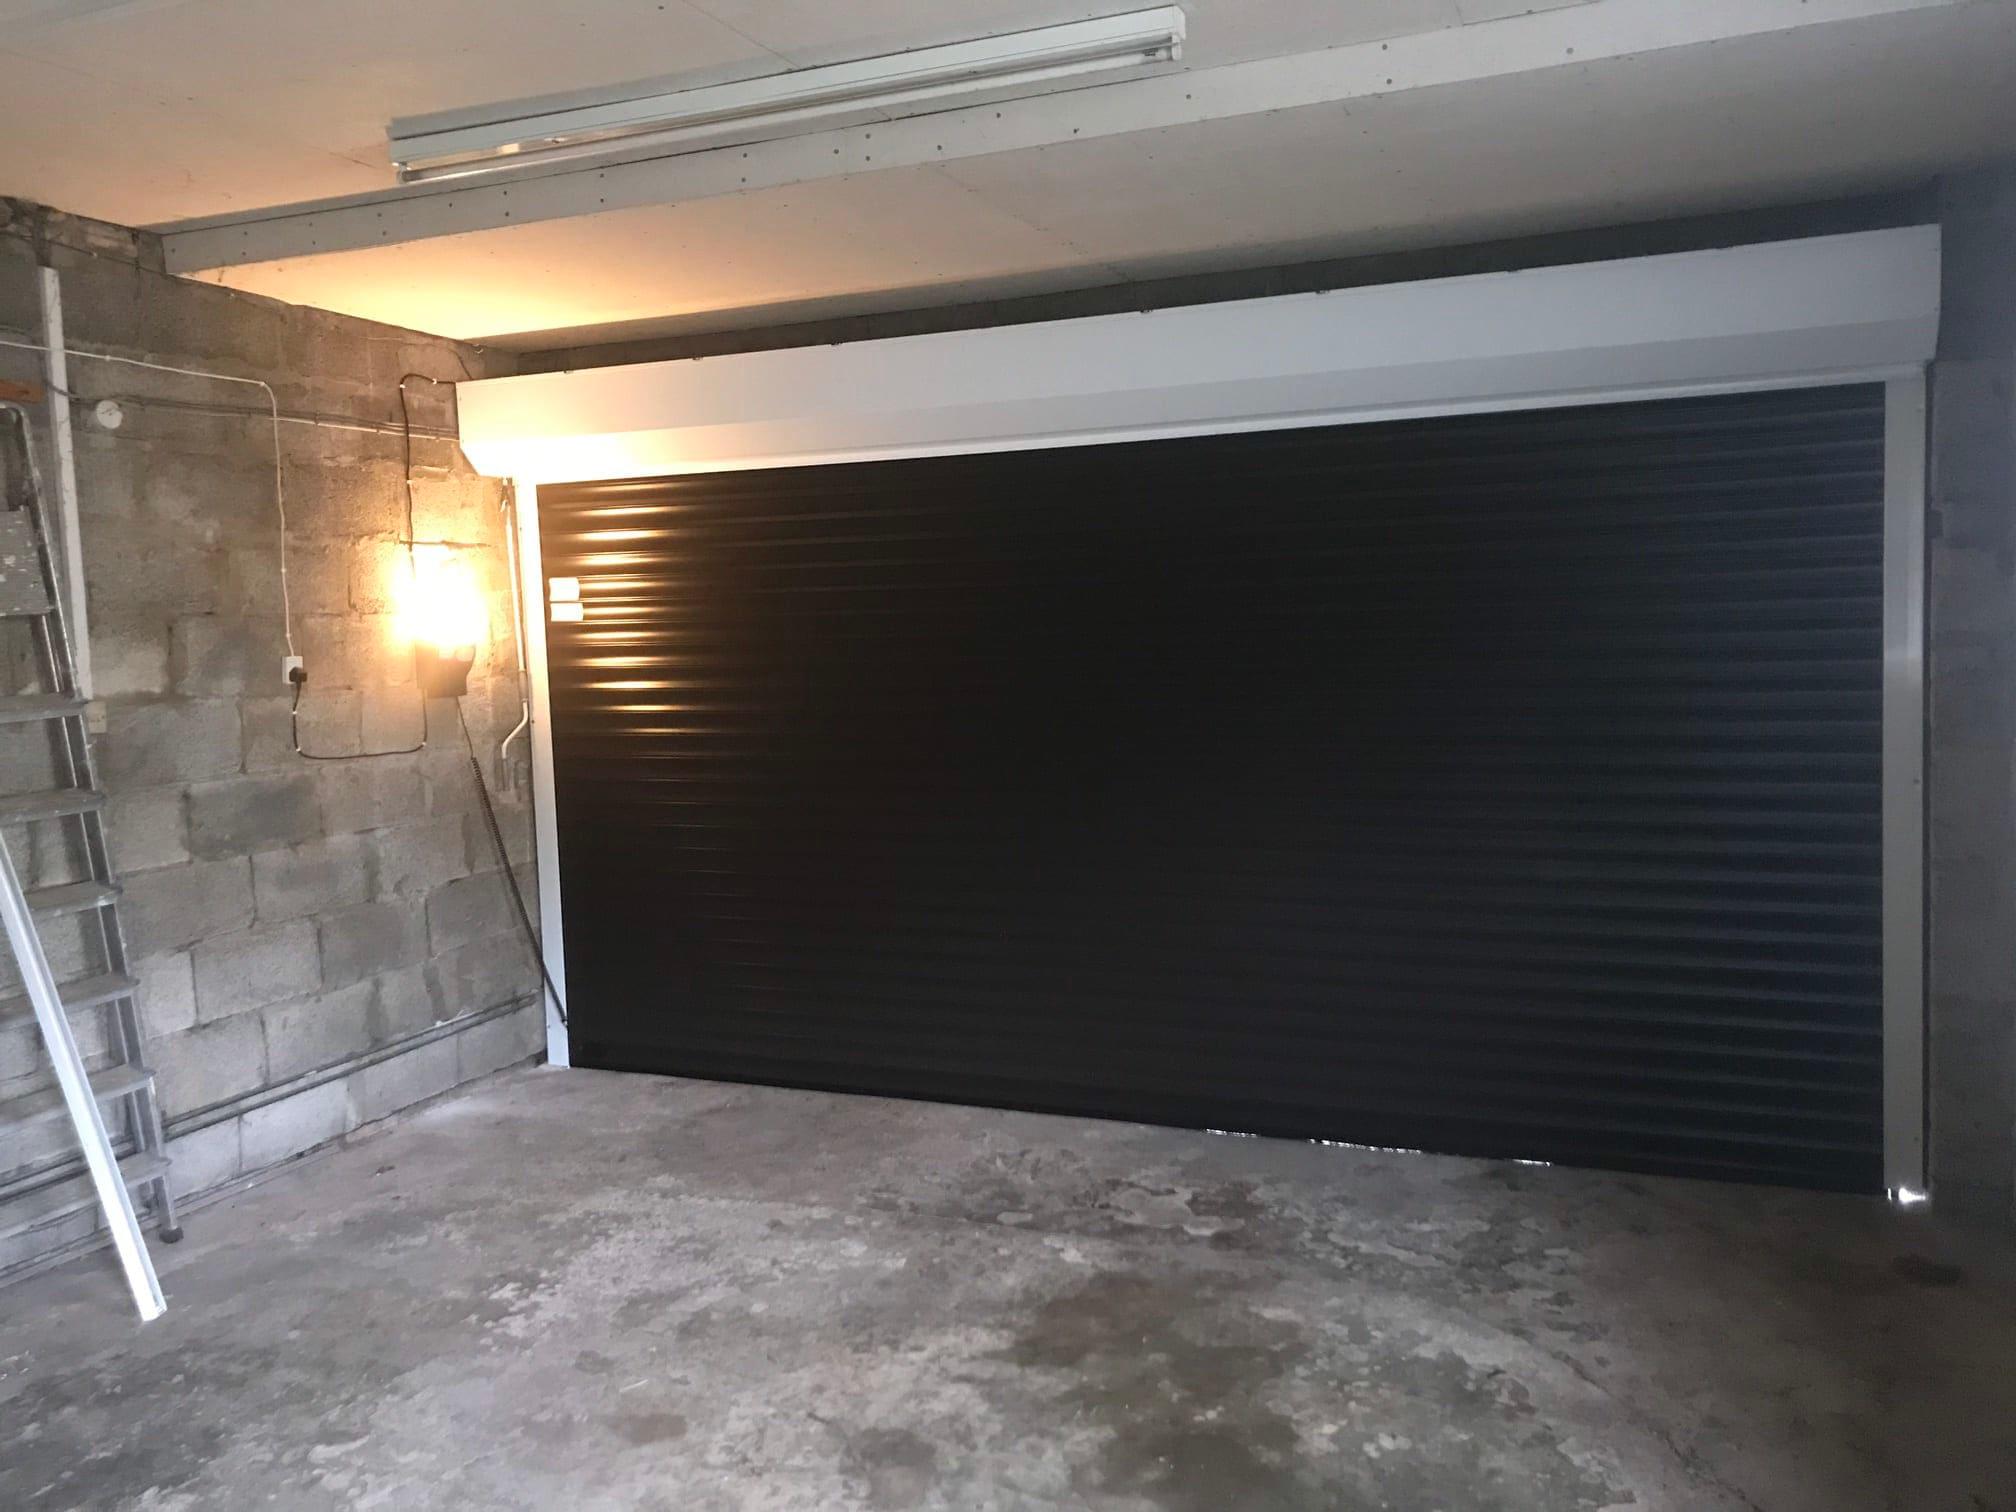 Images Garage Doors Repaired Ltd